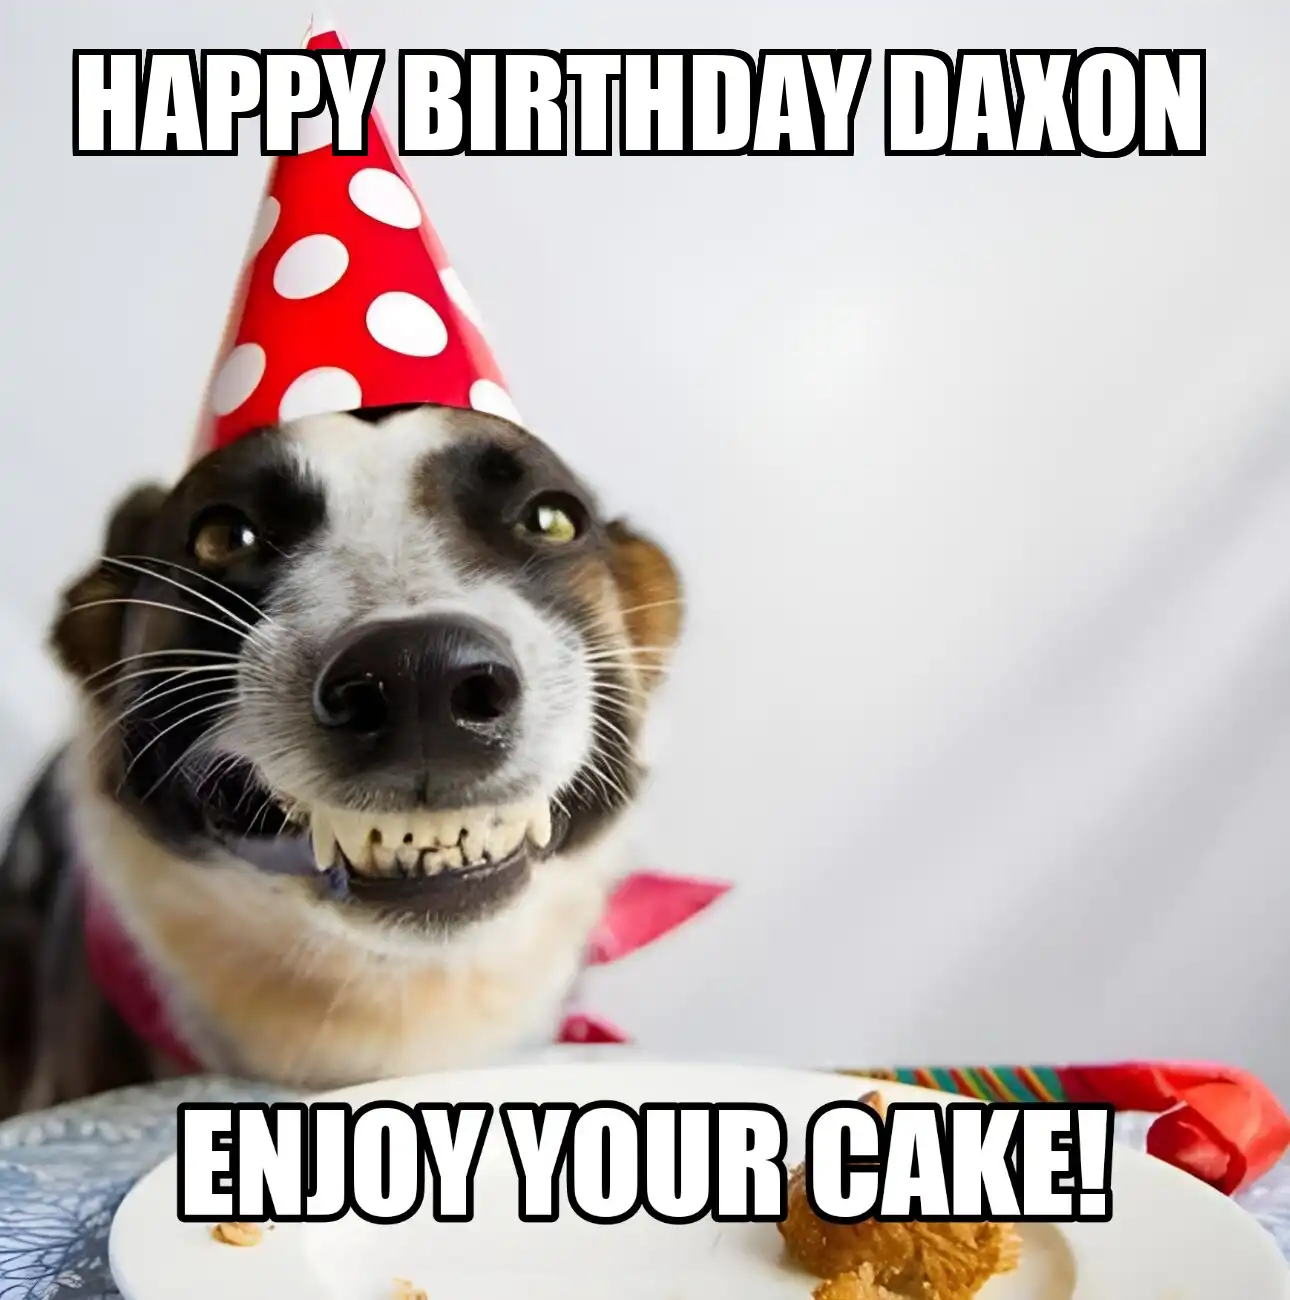 Happy Birthday Daxon Enjoy Your Cake Dog Meme